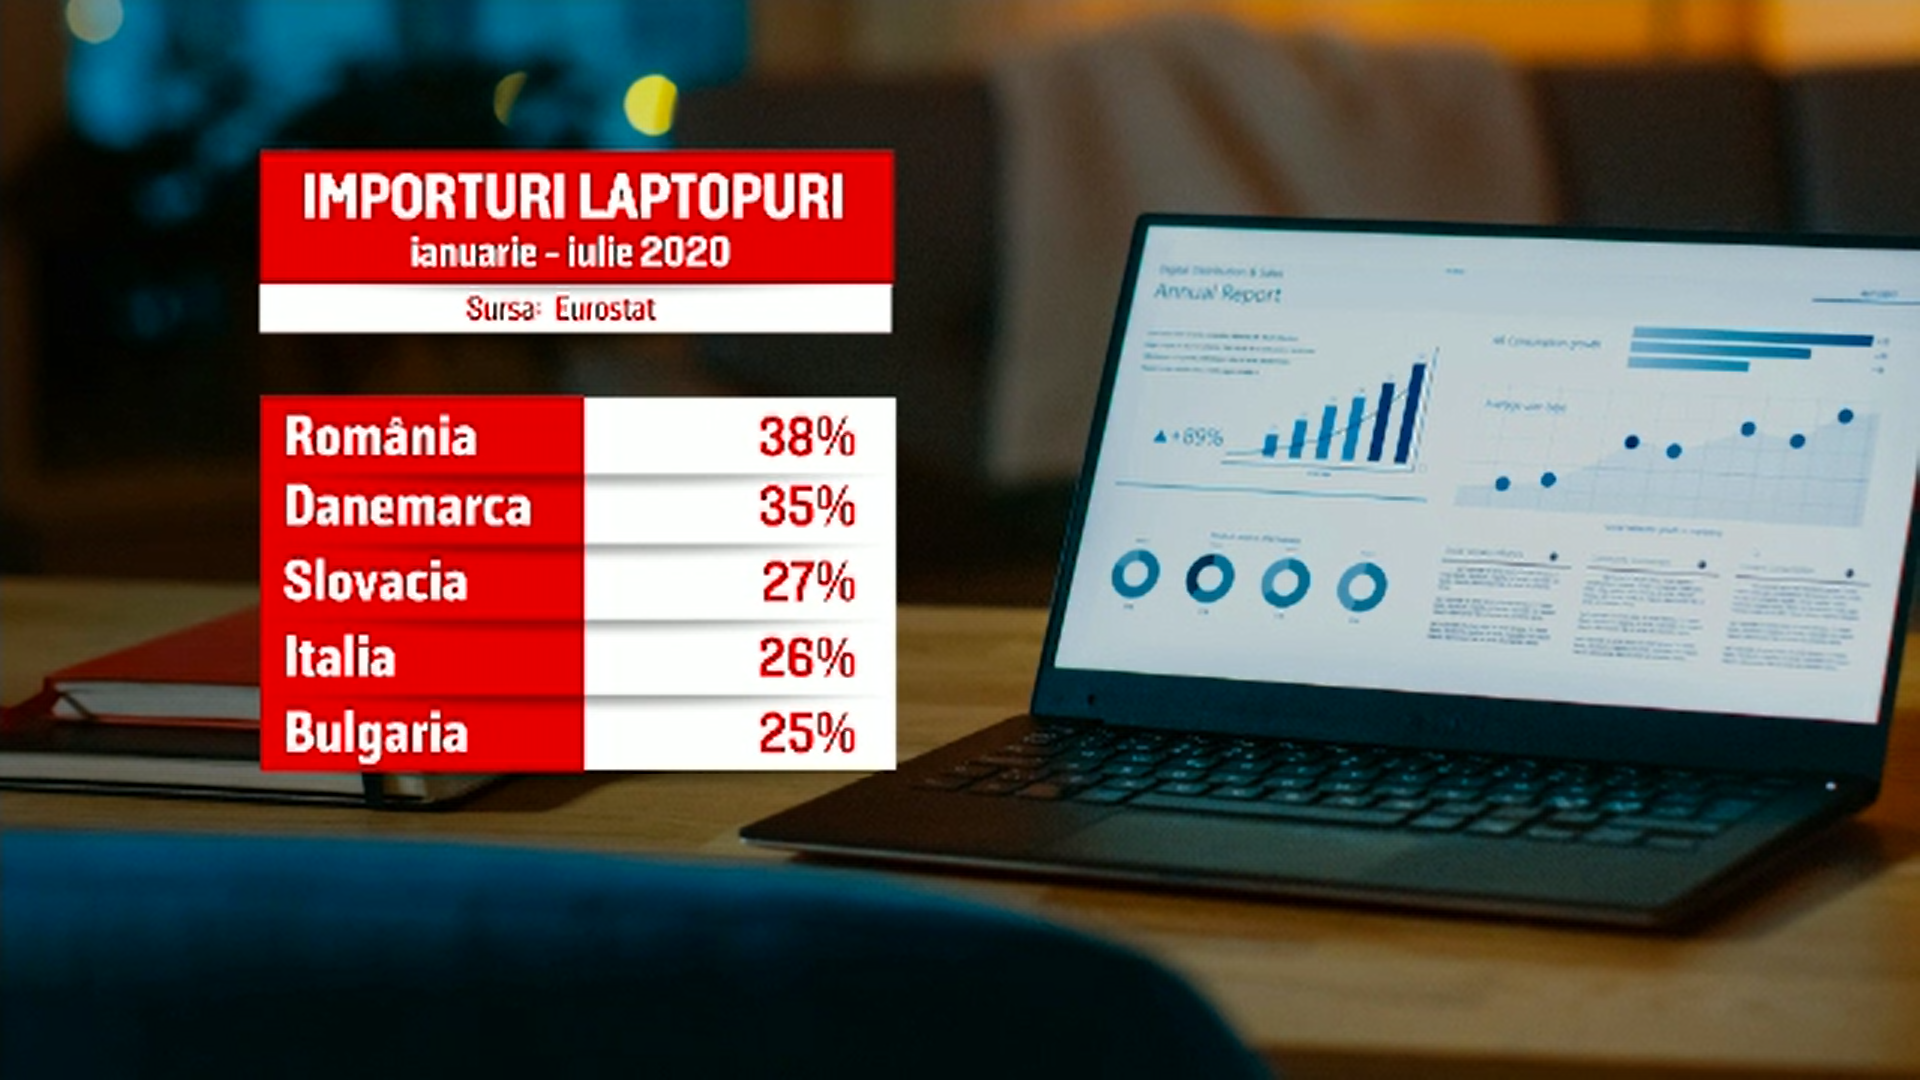 România a cumpărat pe perioada pandemiei cele mai multe laptopuri dintre țările europene